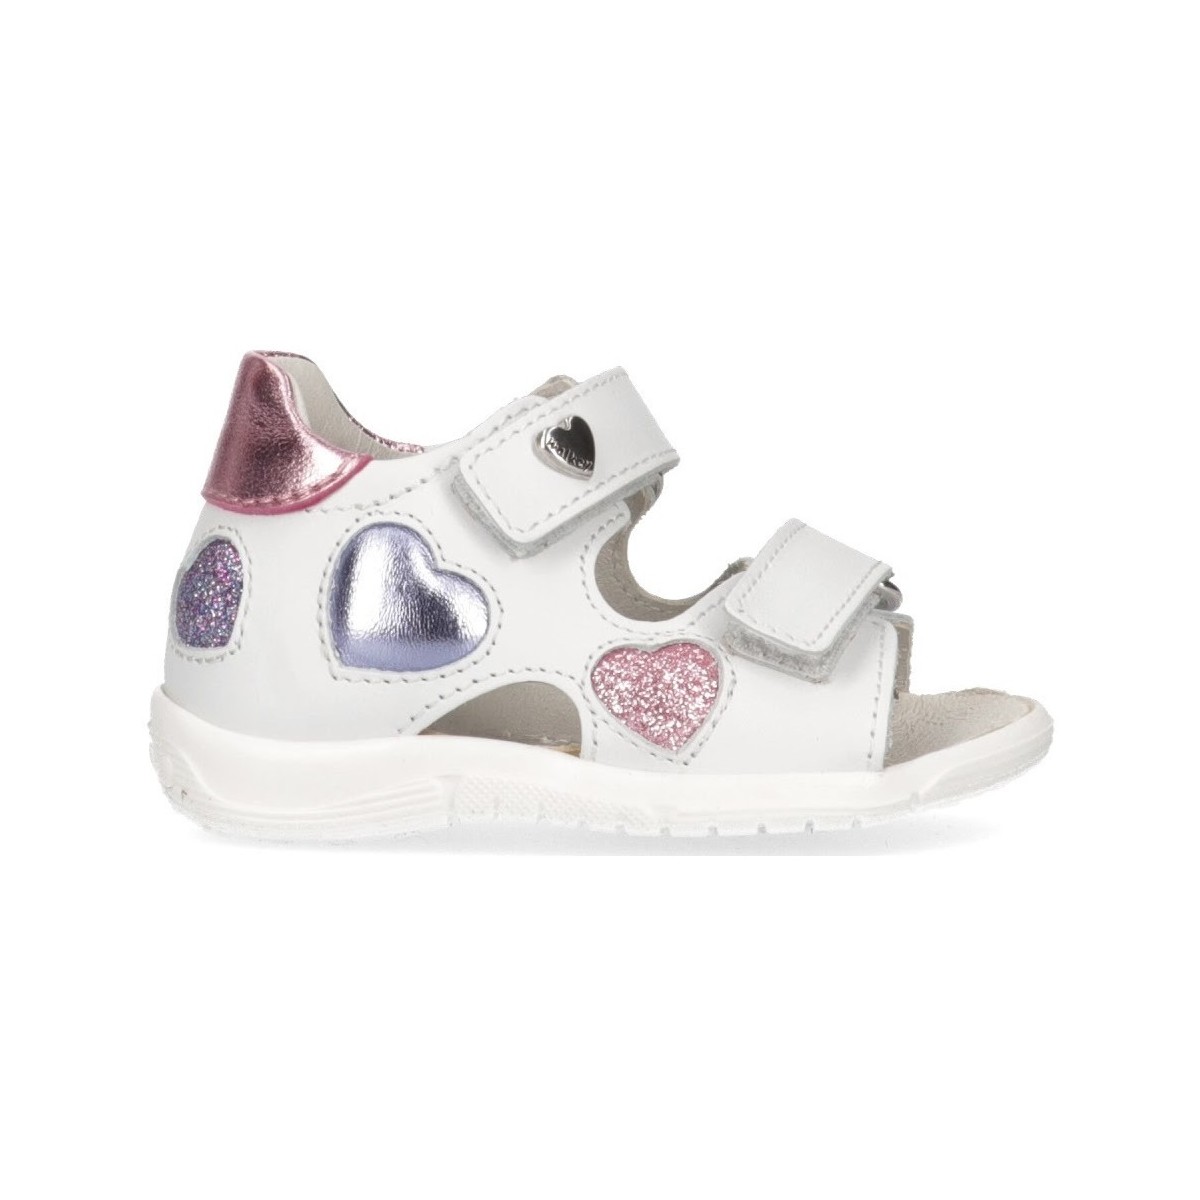 Scarpe Donna Sneakers Walkey Y1A2-41696-0062Y155 Bianco